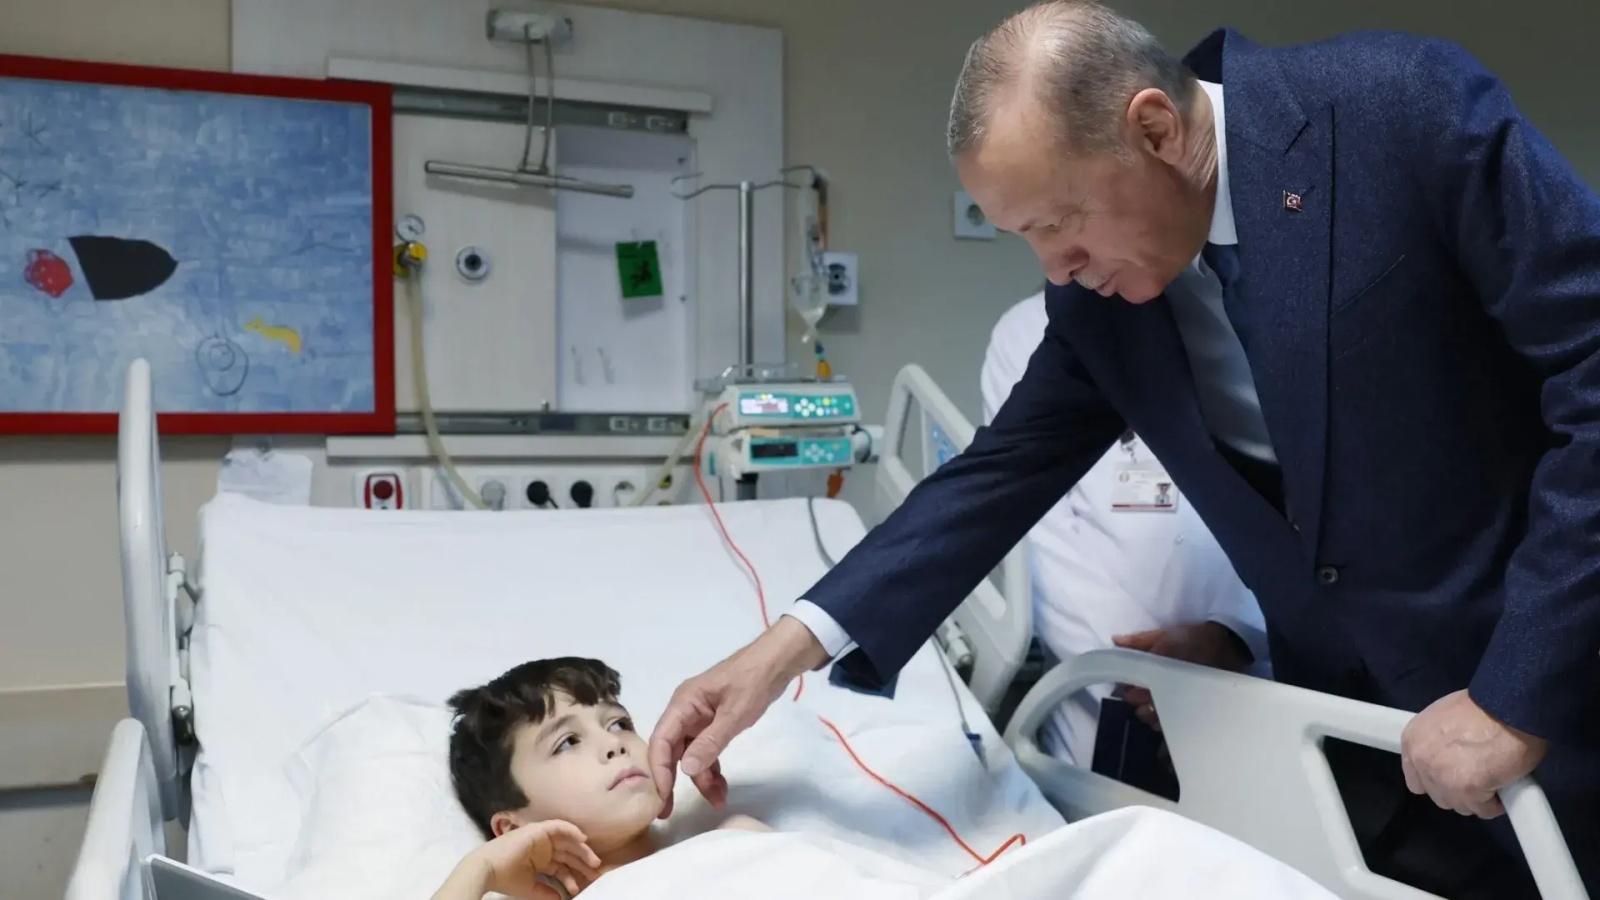 الرئيس التركي رجب طيب إردوغان خلال زيارة لمنطقة بجنوب شرق البلاد